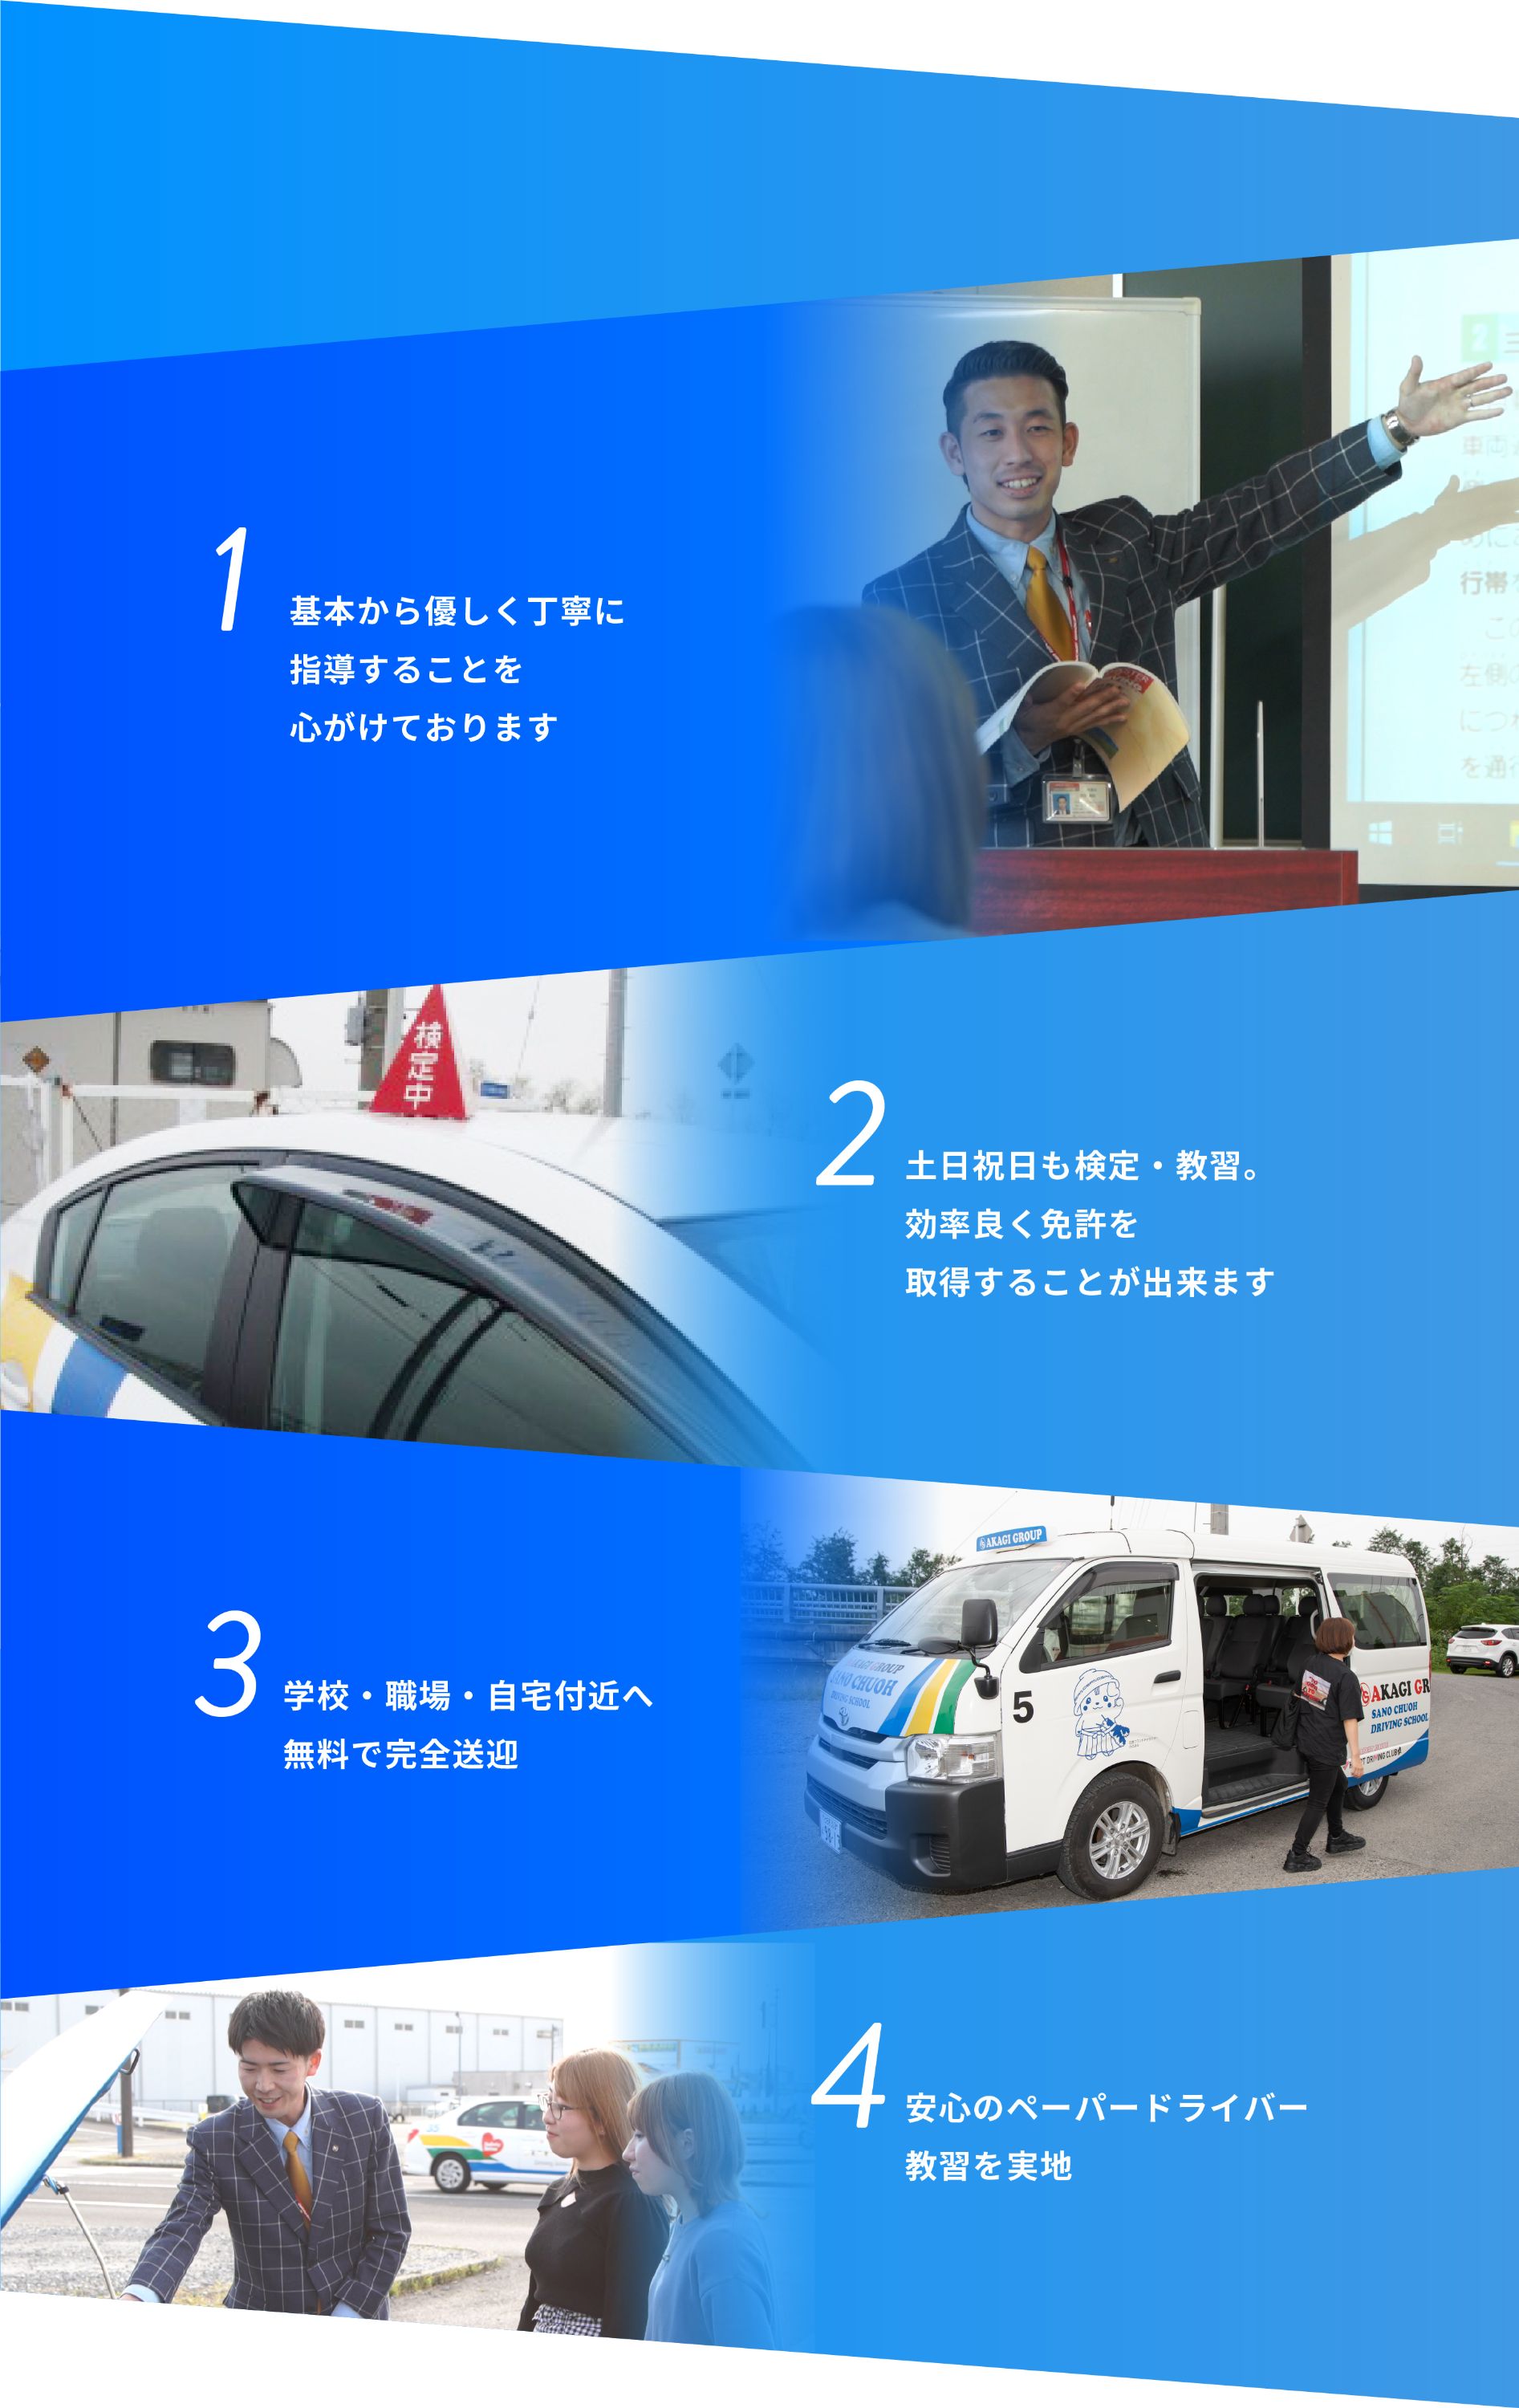 佐野中央自動車教習所の特徴